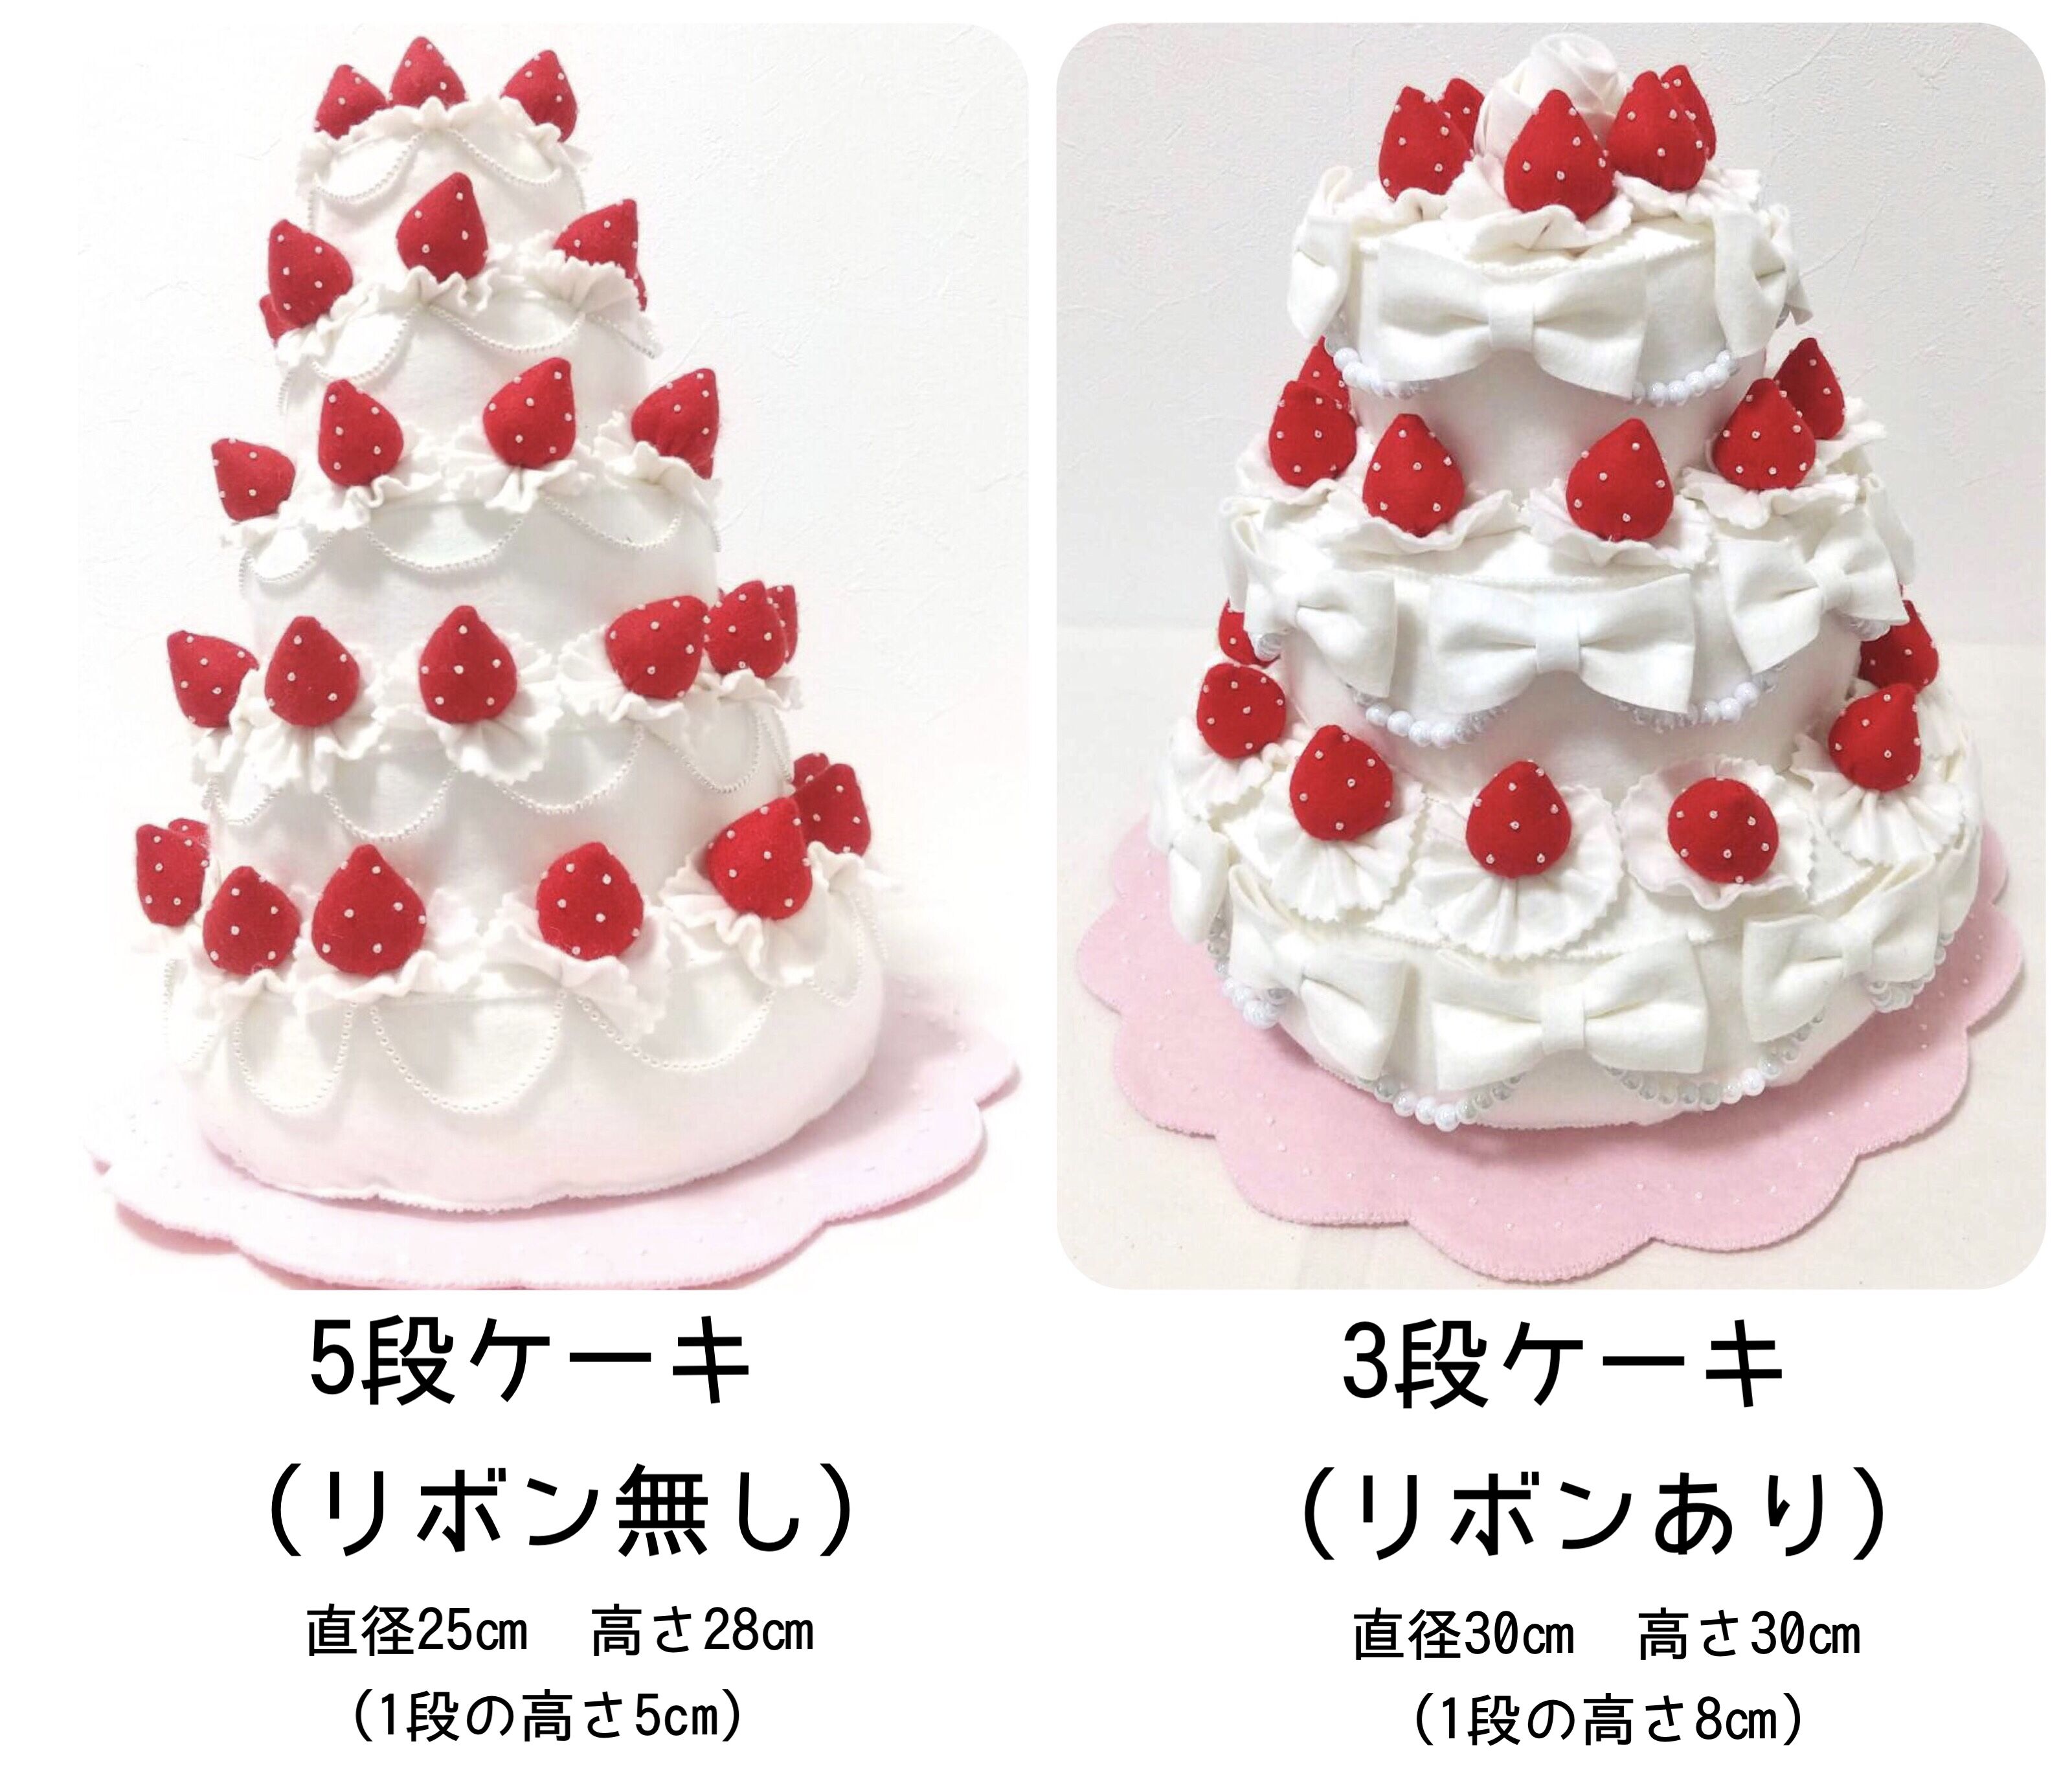 選べる45色 ビッグサイズのデコレーションケーキ 931 ウェディングケーキ フェルト いちご 誕生日 フォトアイテム Iichi ハンドメイド クラフト作品 手仕事品の通販